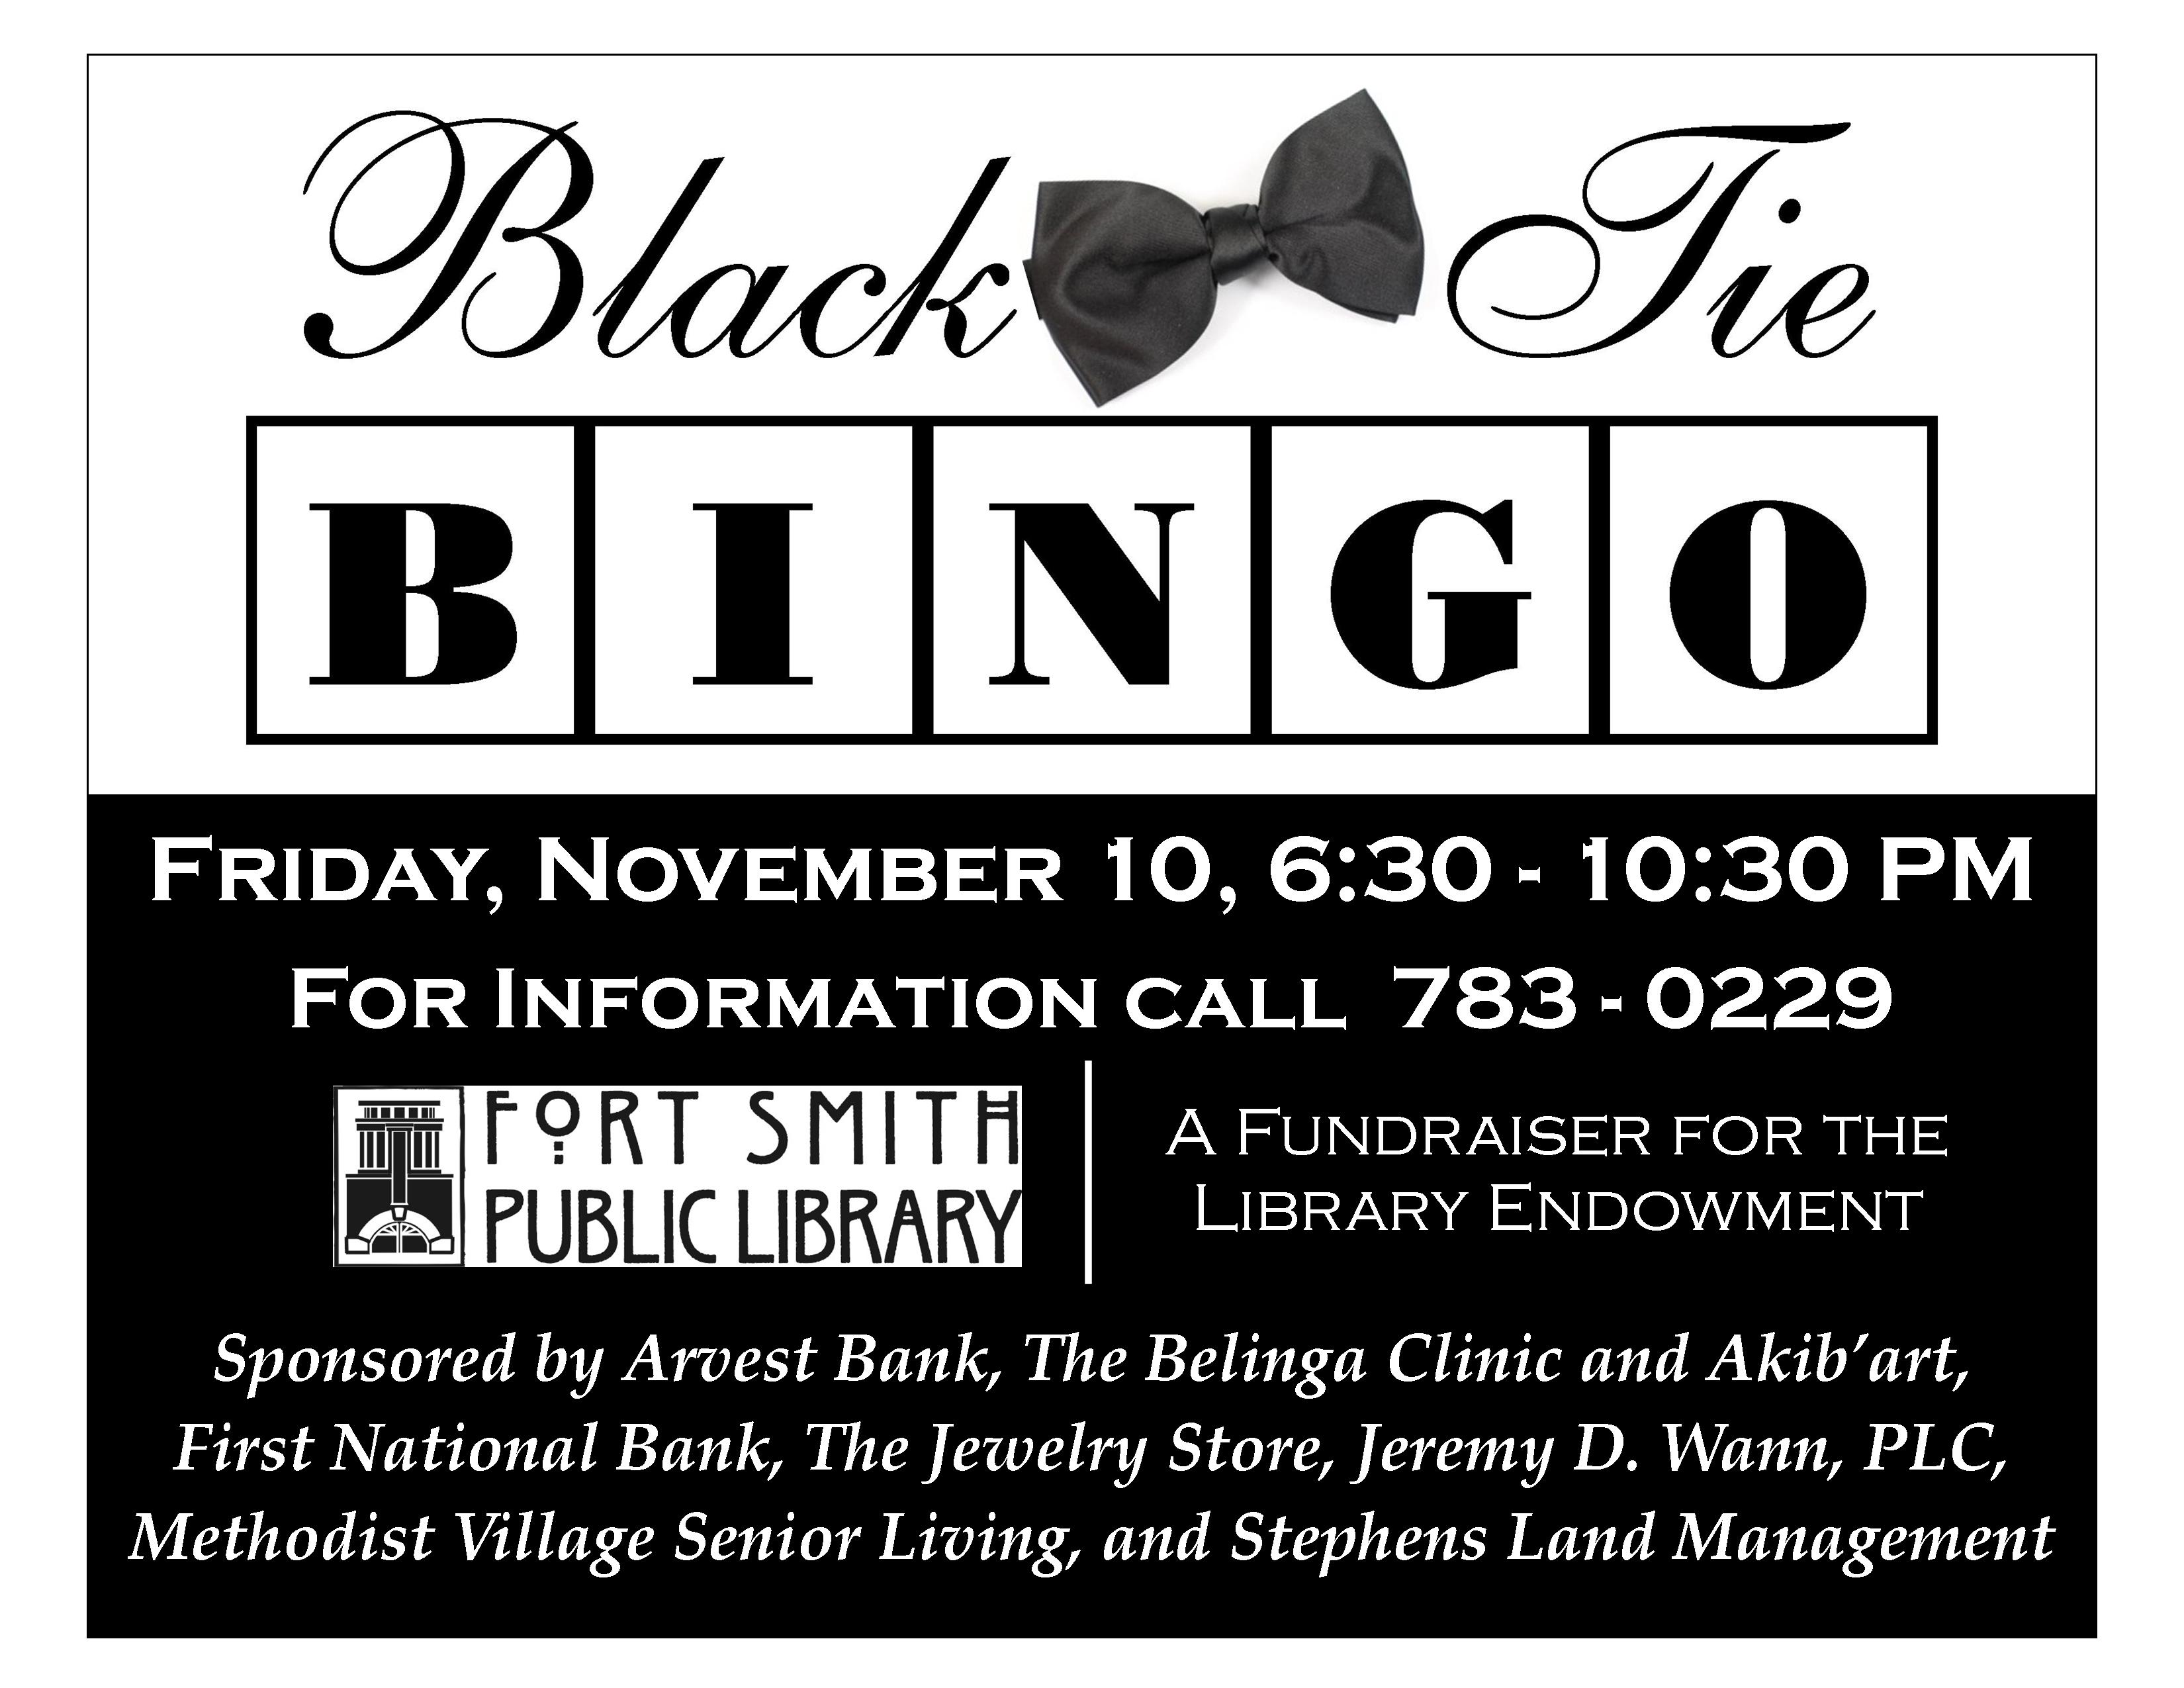 Black Tie Bingo poster